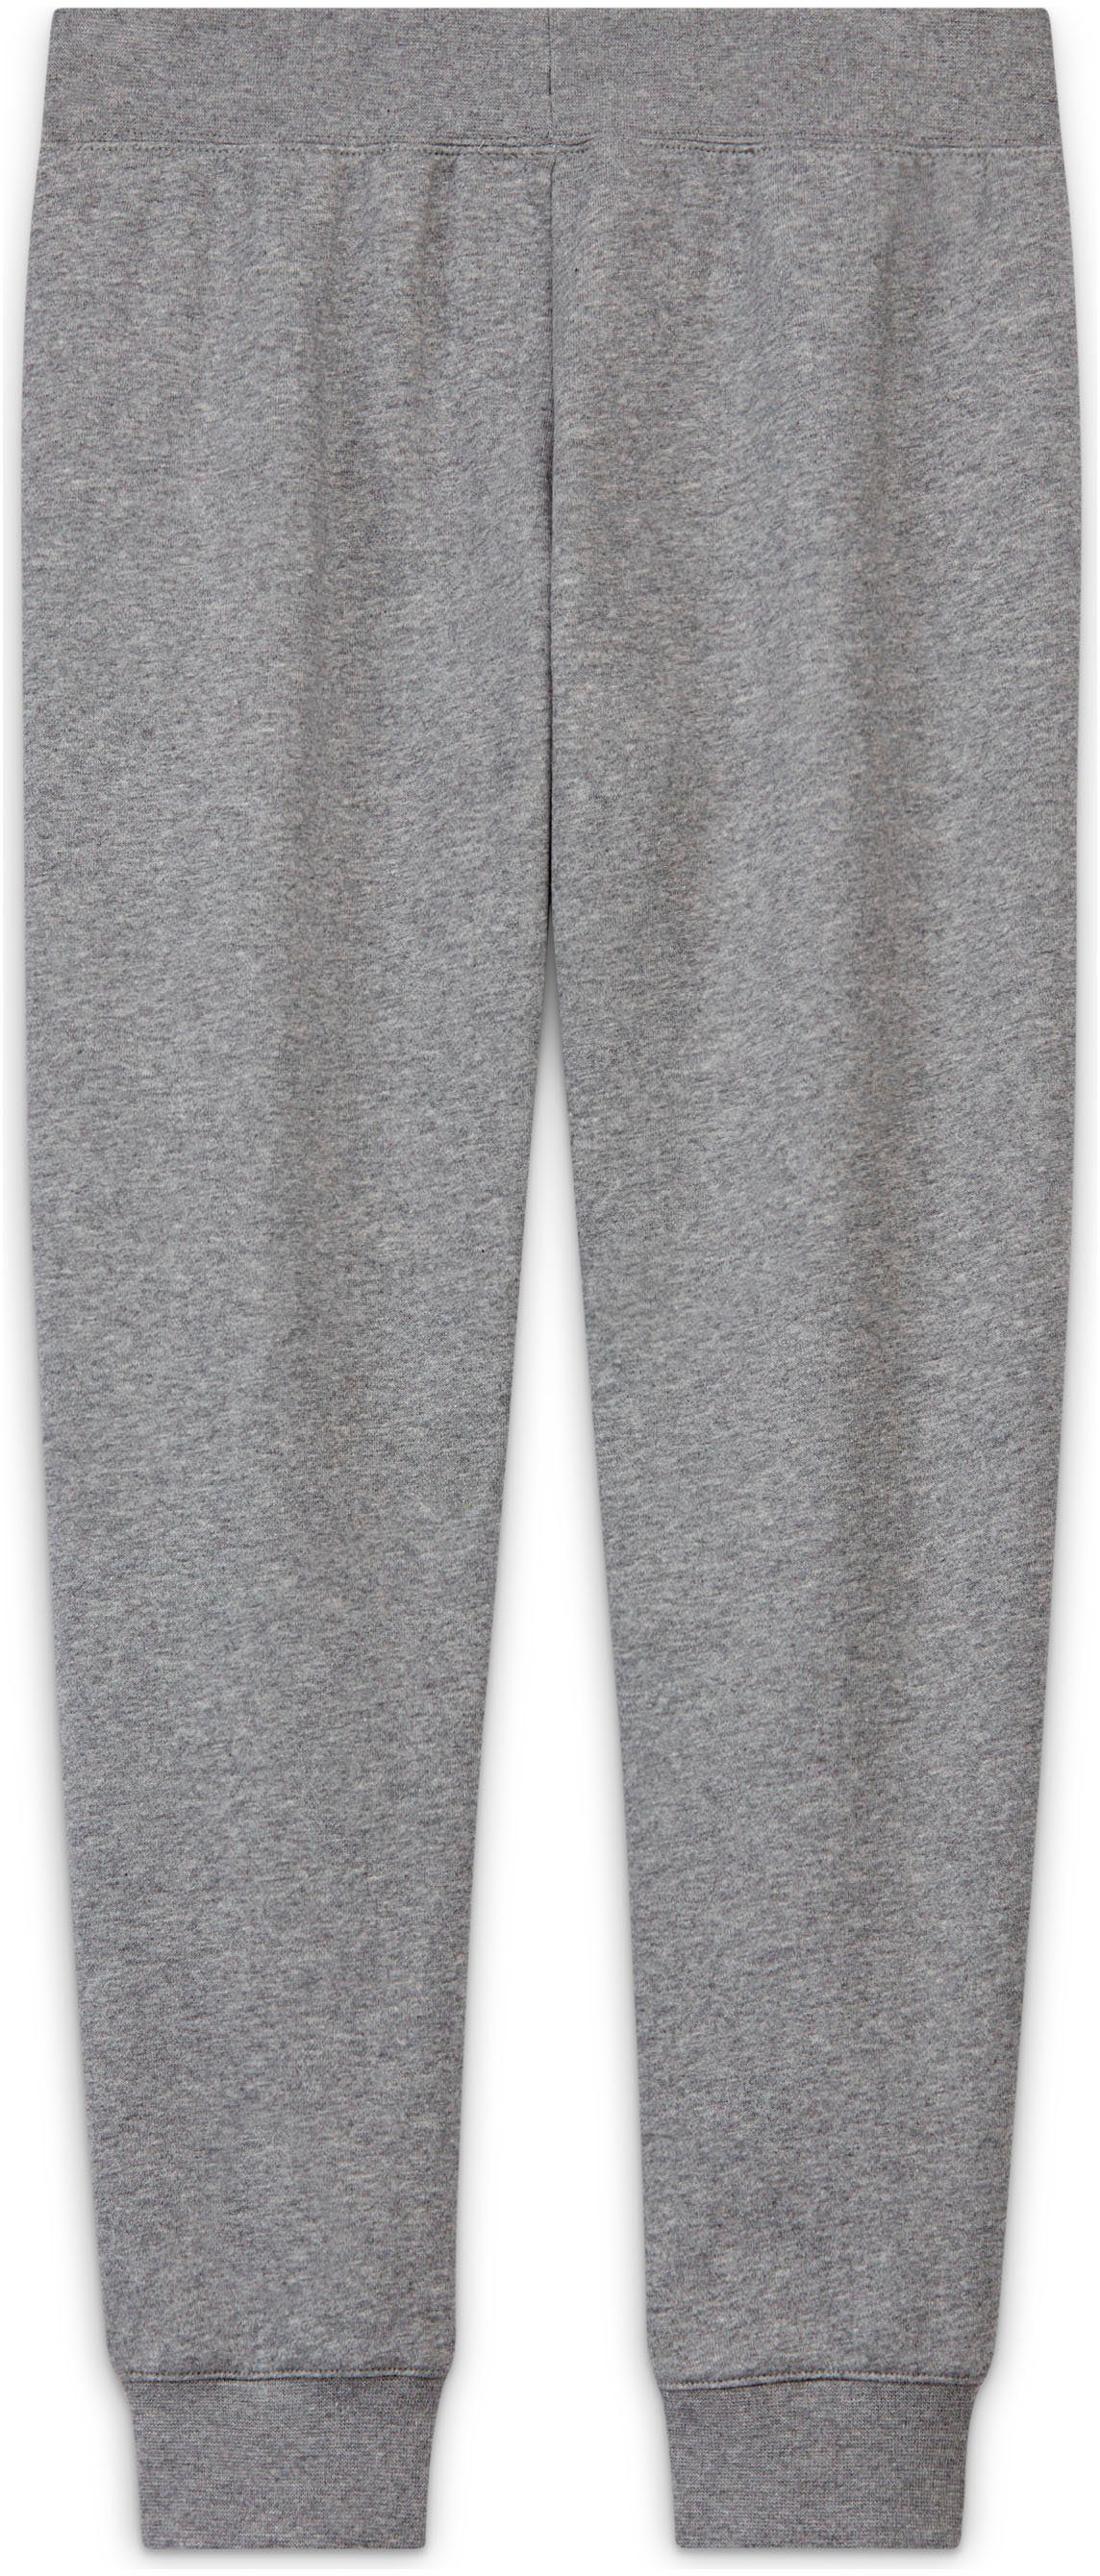 Nike Big Club Jogginghose Sportswear Kids' Pants Fleece (Girls) grau-meliert